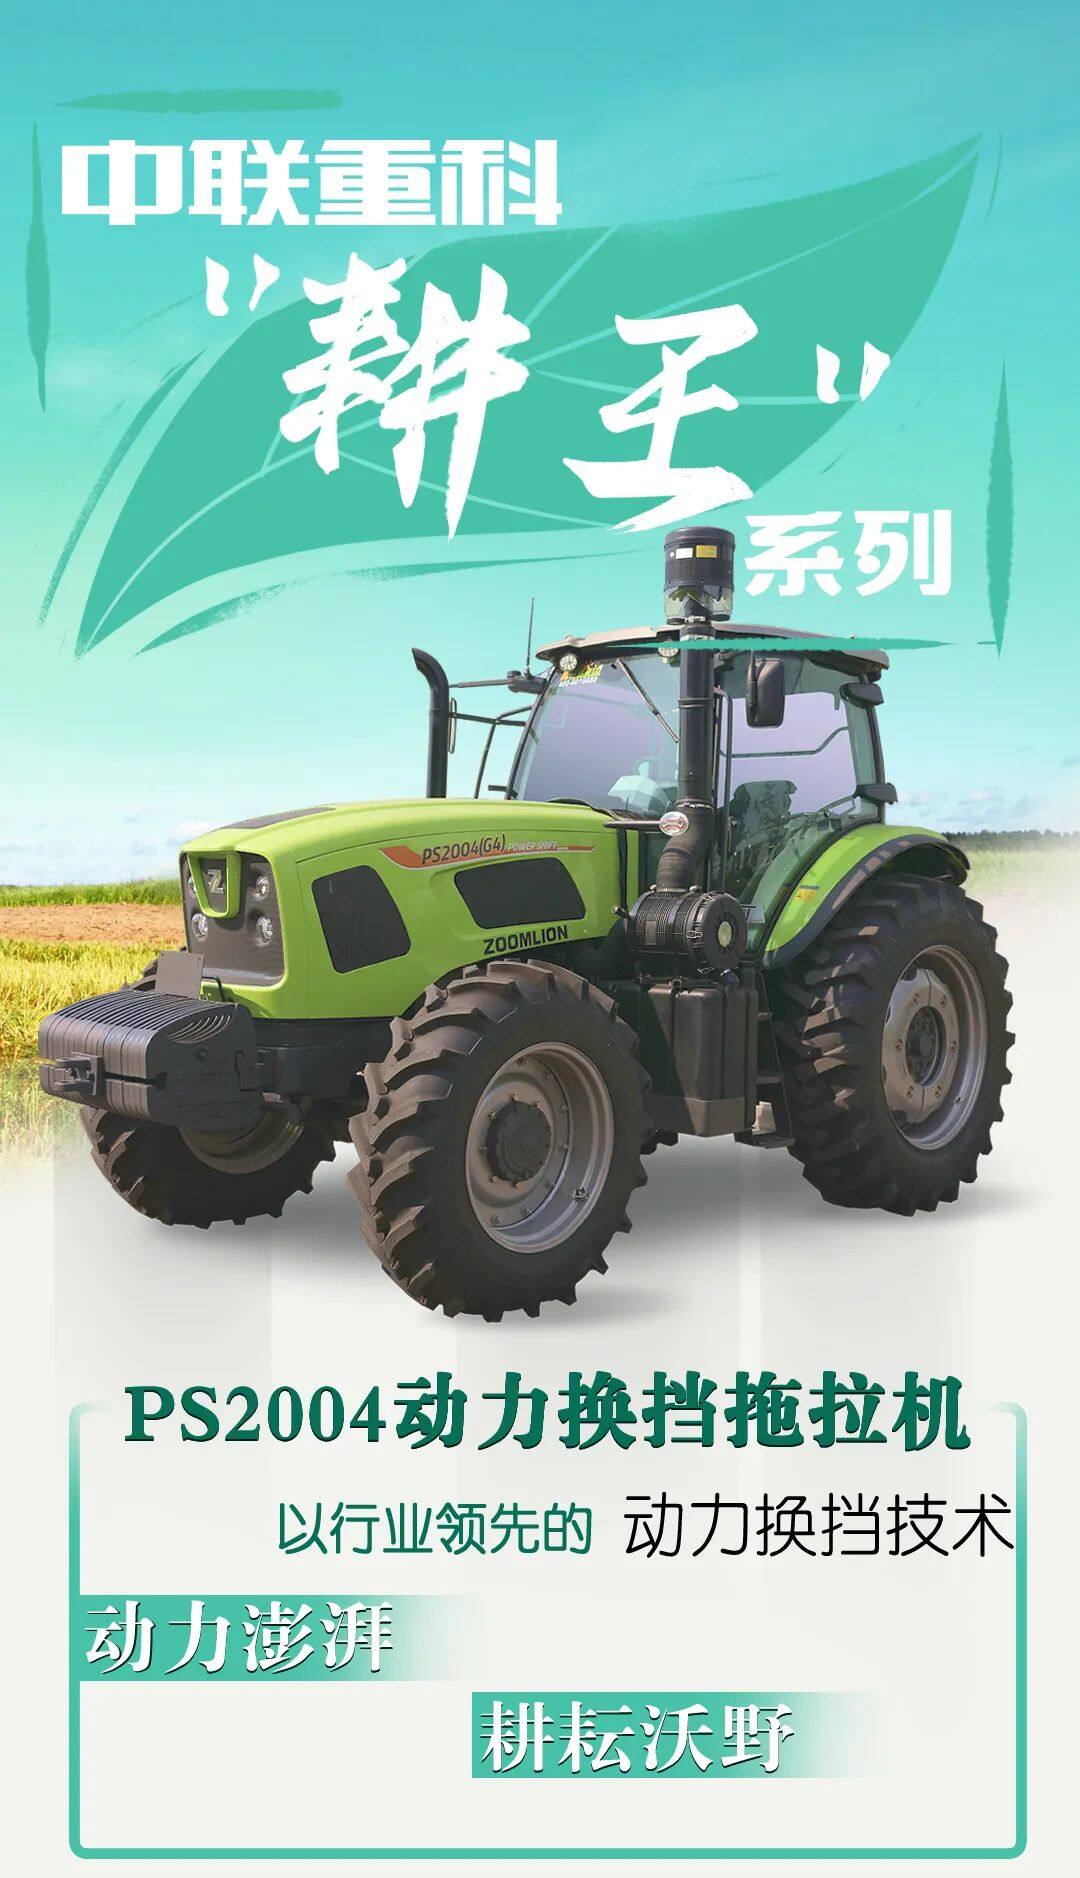 中联重科“耕王”PS2004动力换挡拖拉机